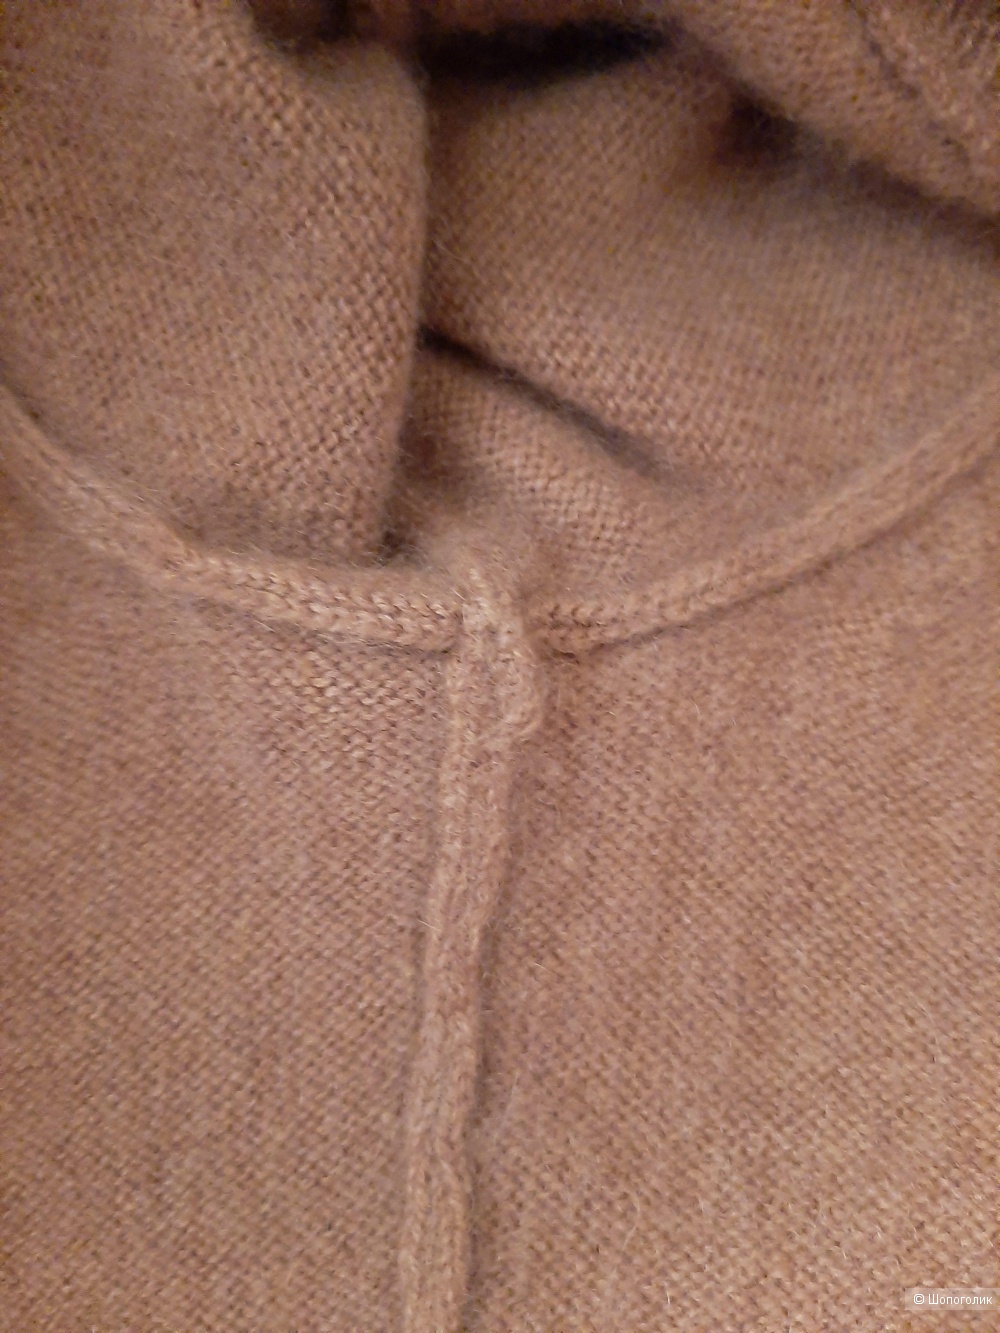 Кашемировый пуловер  ESISTO  размер L